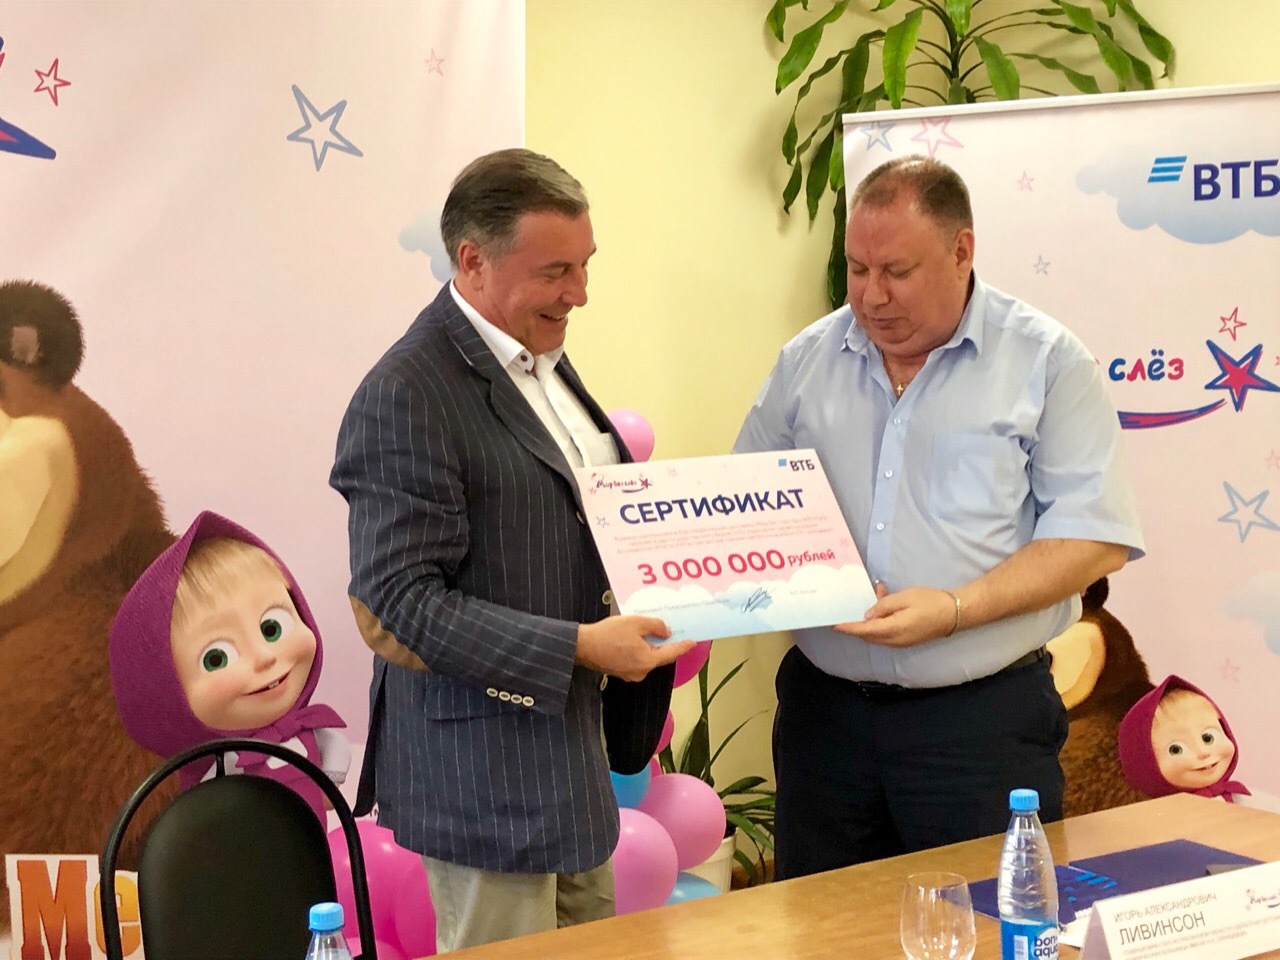 Z0 5oH1L8oc Астраханская детская больница получила три миллиона на покупку высокотехнологичного оборудования